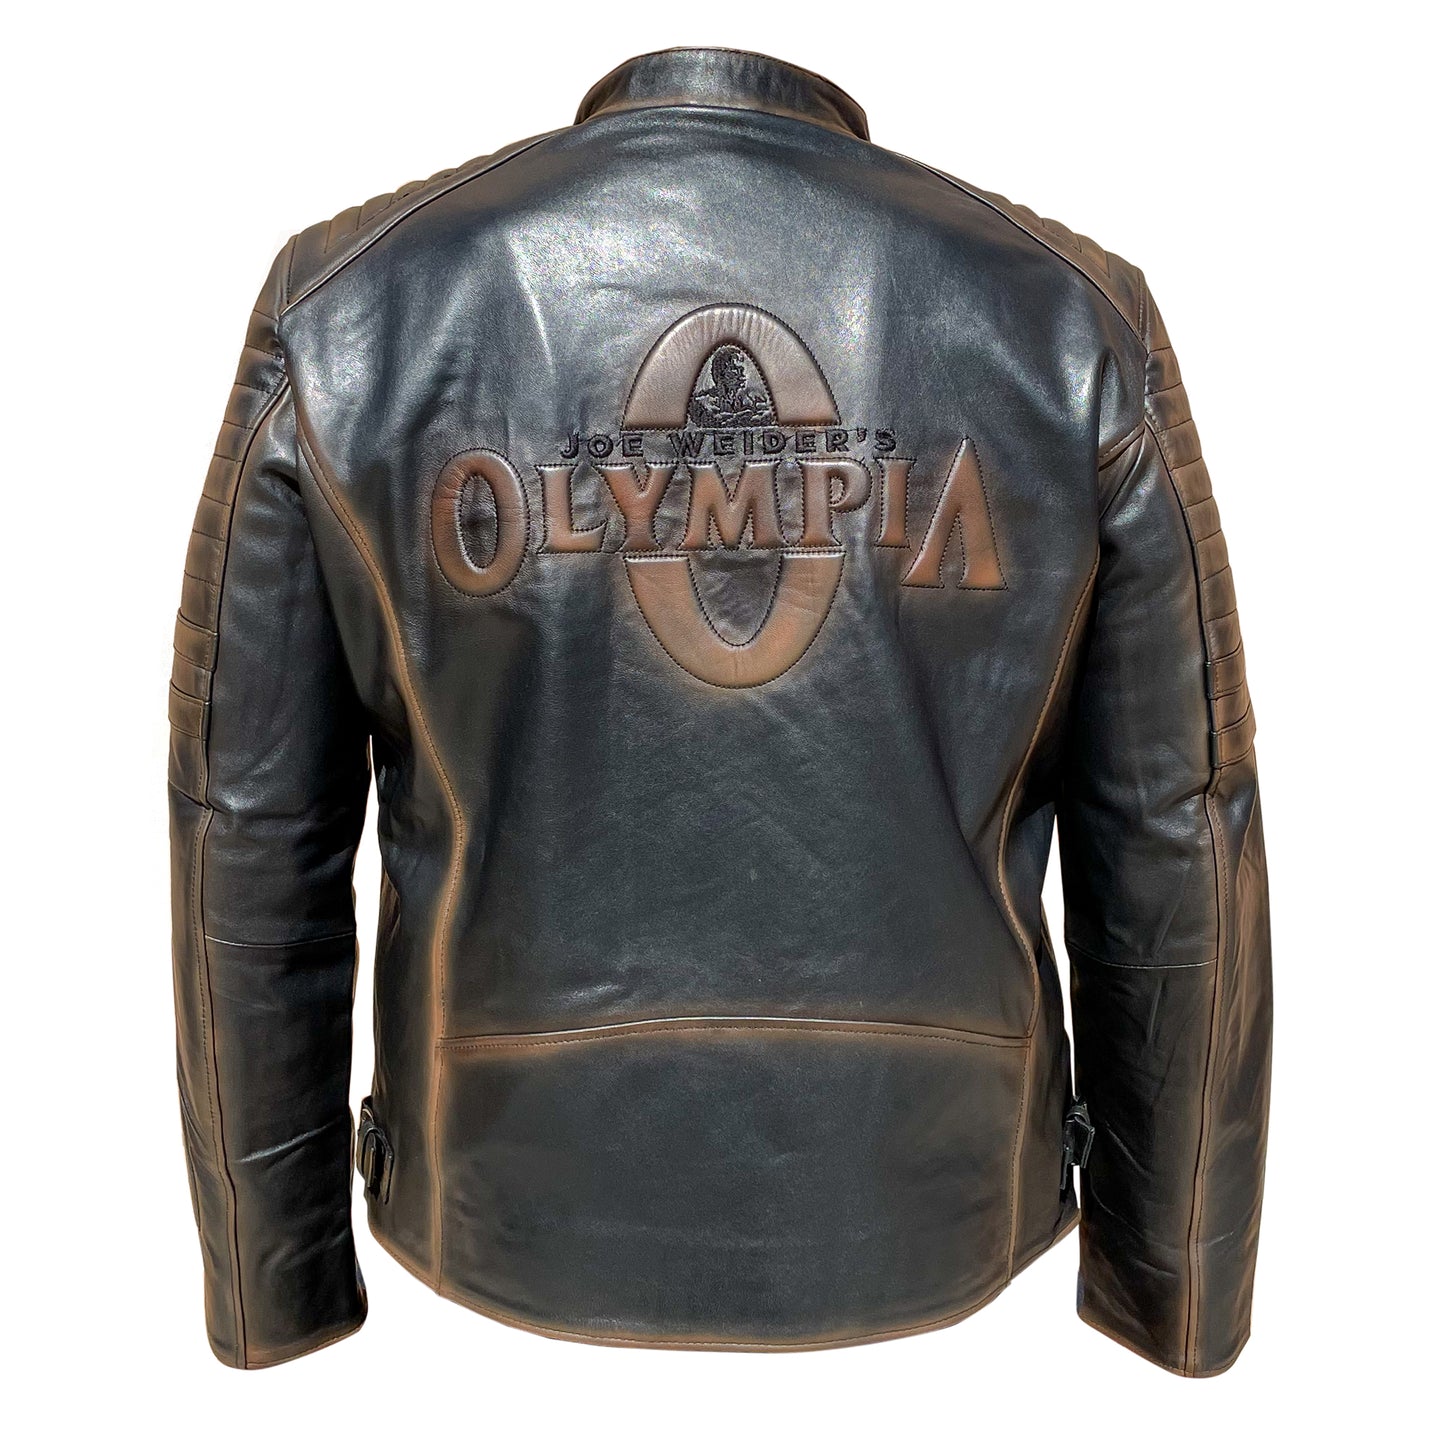 Olympia Leather Jacket